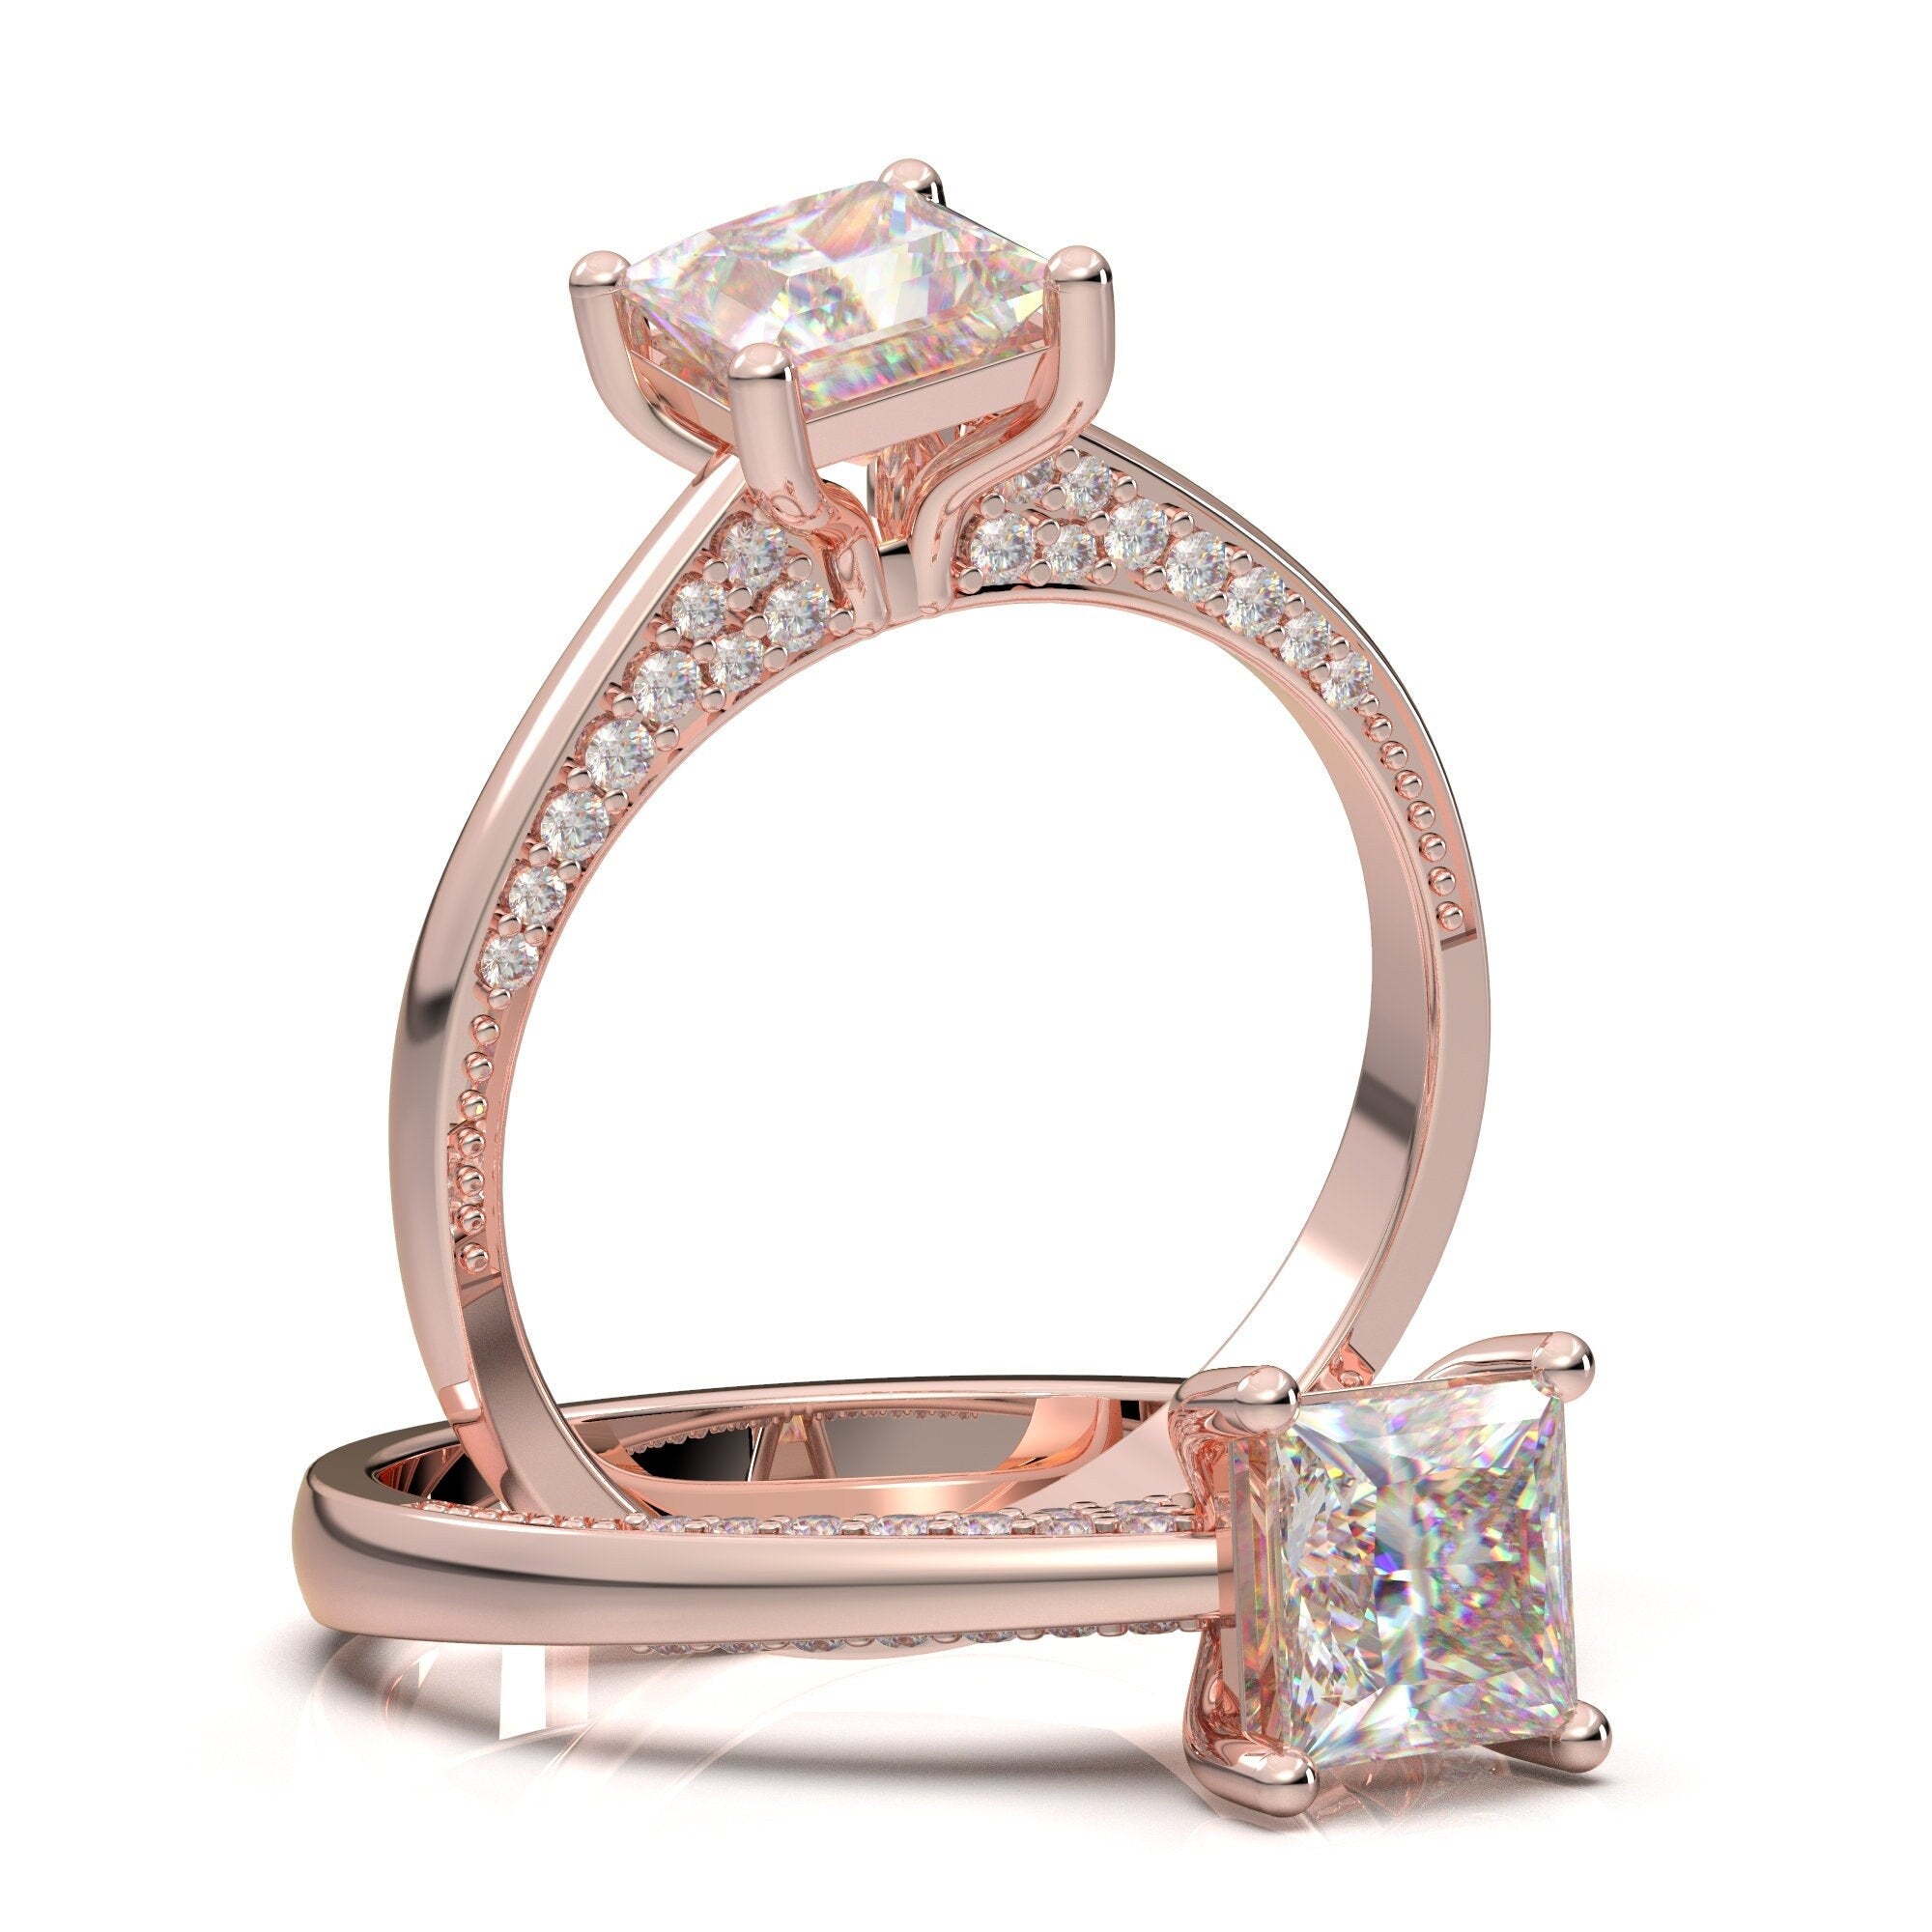 North star diamond ring gold Star wedding ring Dainty Gold ring Minimalist  ring